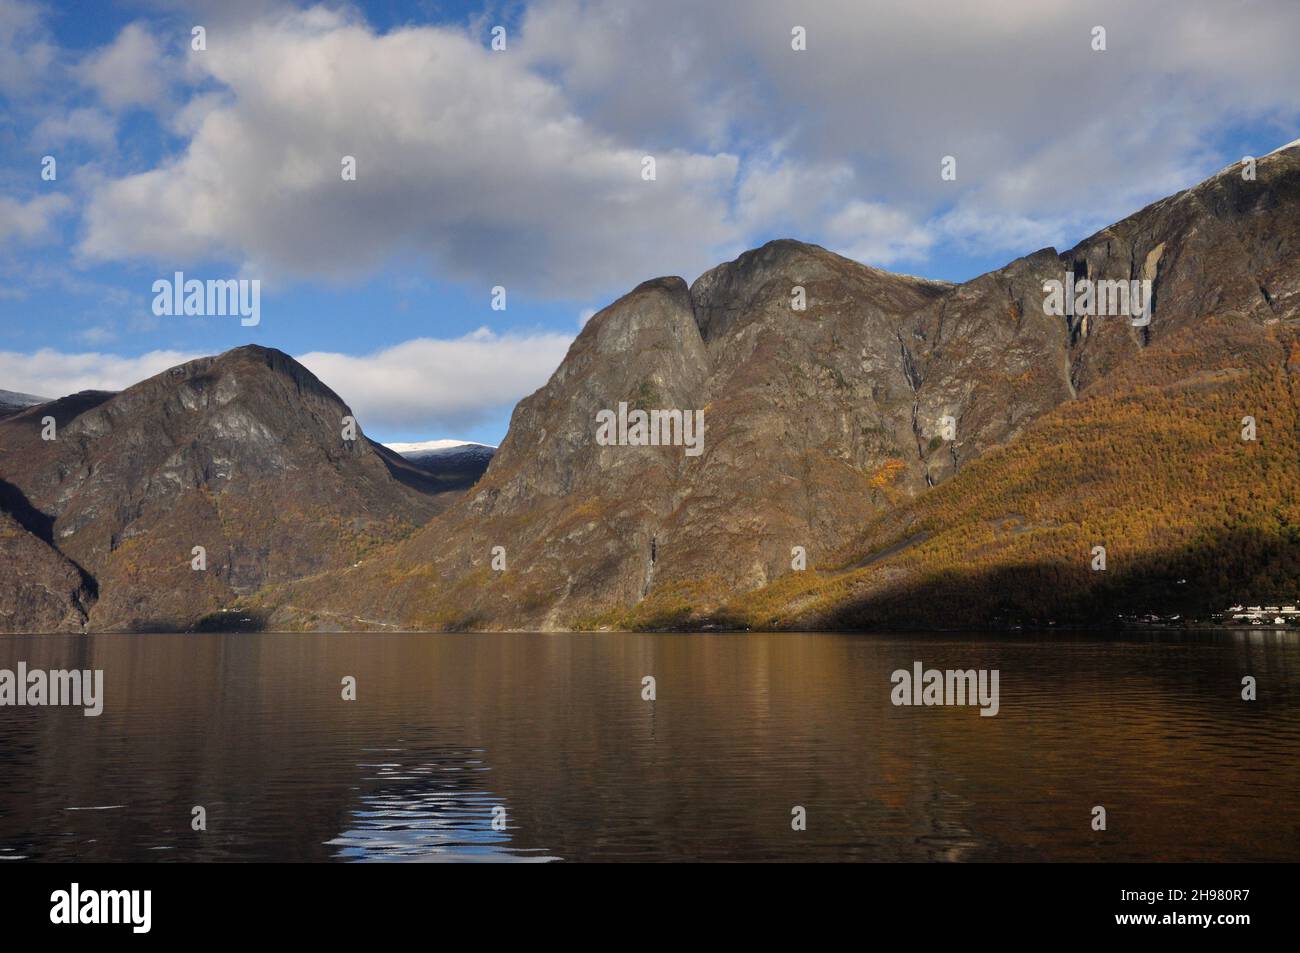 Der Aurlandsfjord bei Flam in Norwegen bietet ein umwerfendes Naturschauspiel und lässt die Seele zur Ruhe kommen. Stock Photo